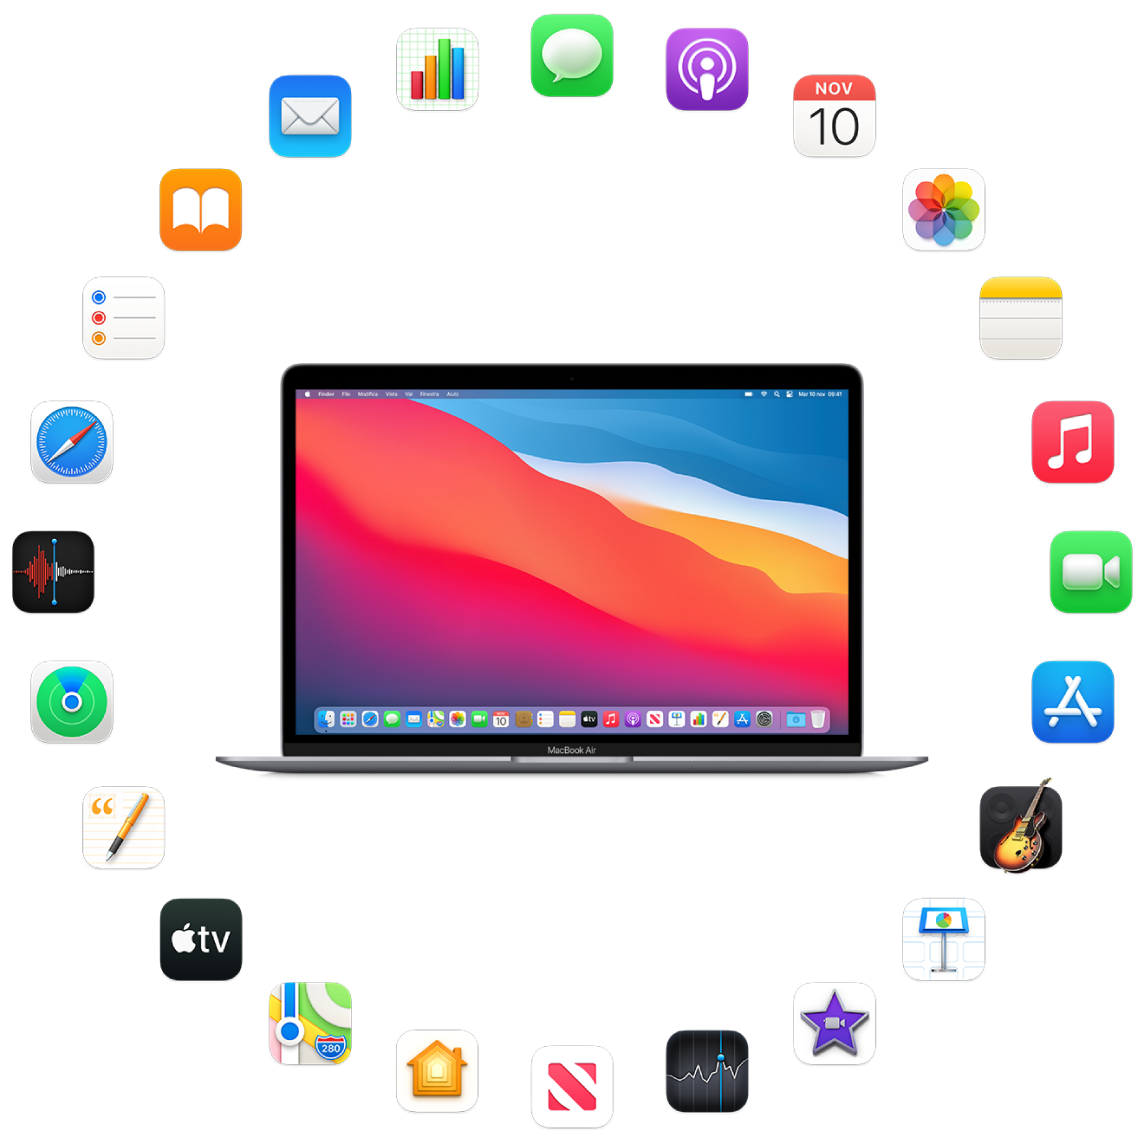 MacBook Air circondato dalle icone delle app integrate, descritte nelle sezioni successive.